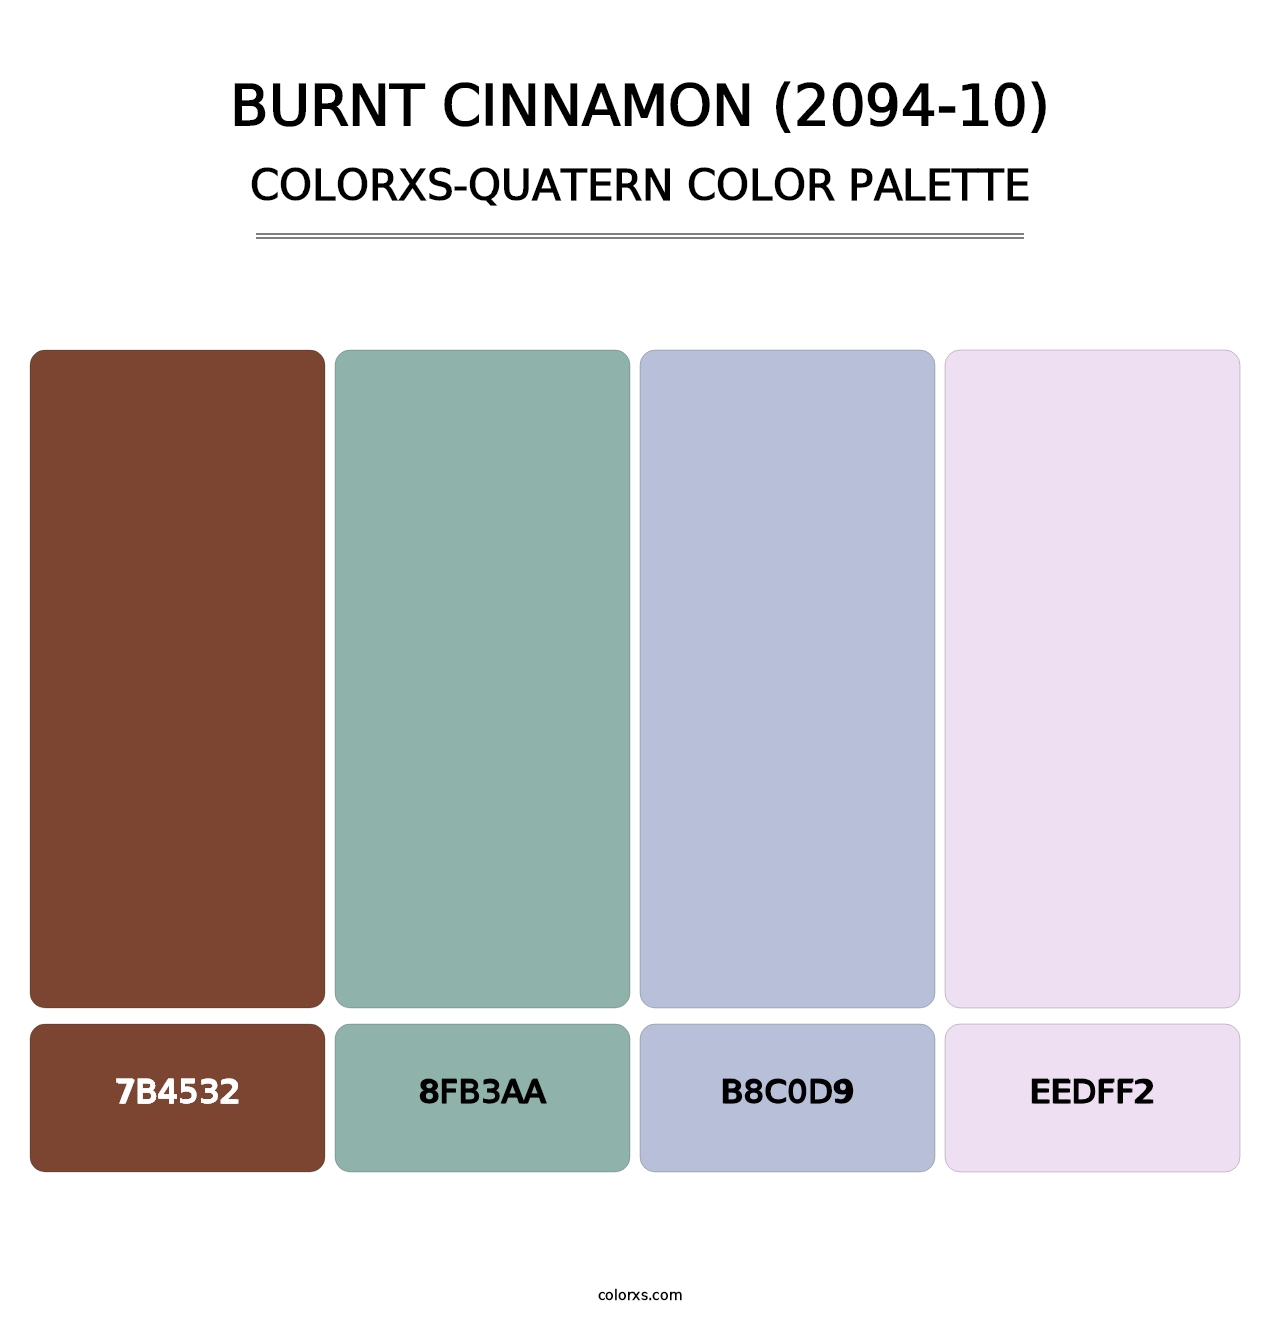 Burnt Cinnamon (2094-10) - Colorxs Quatern Palette